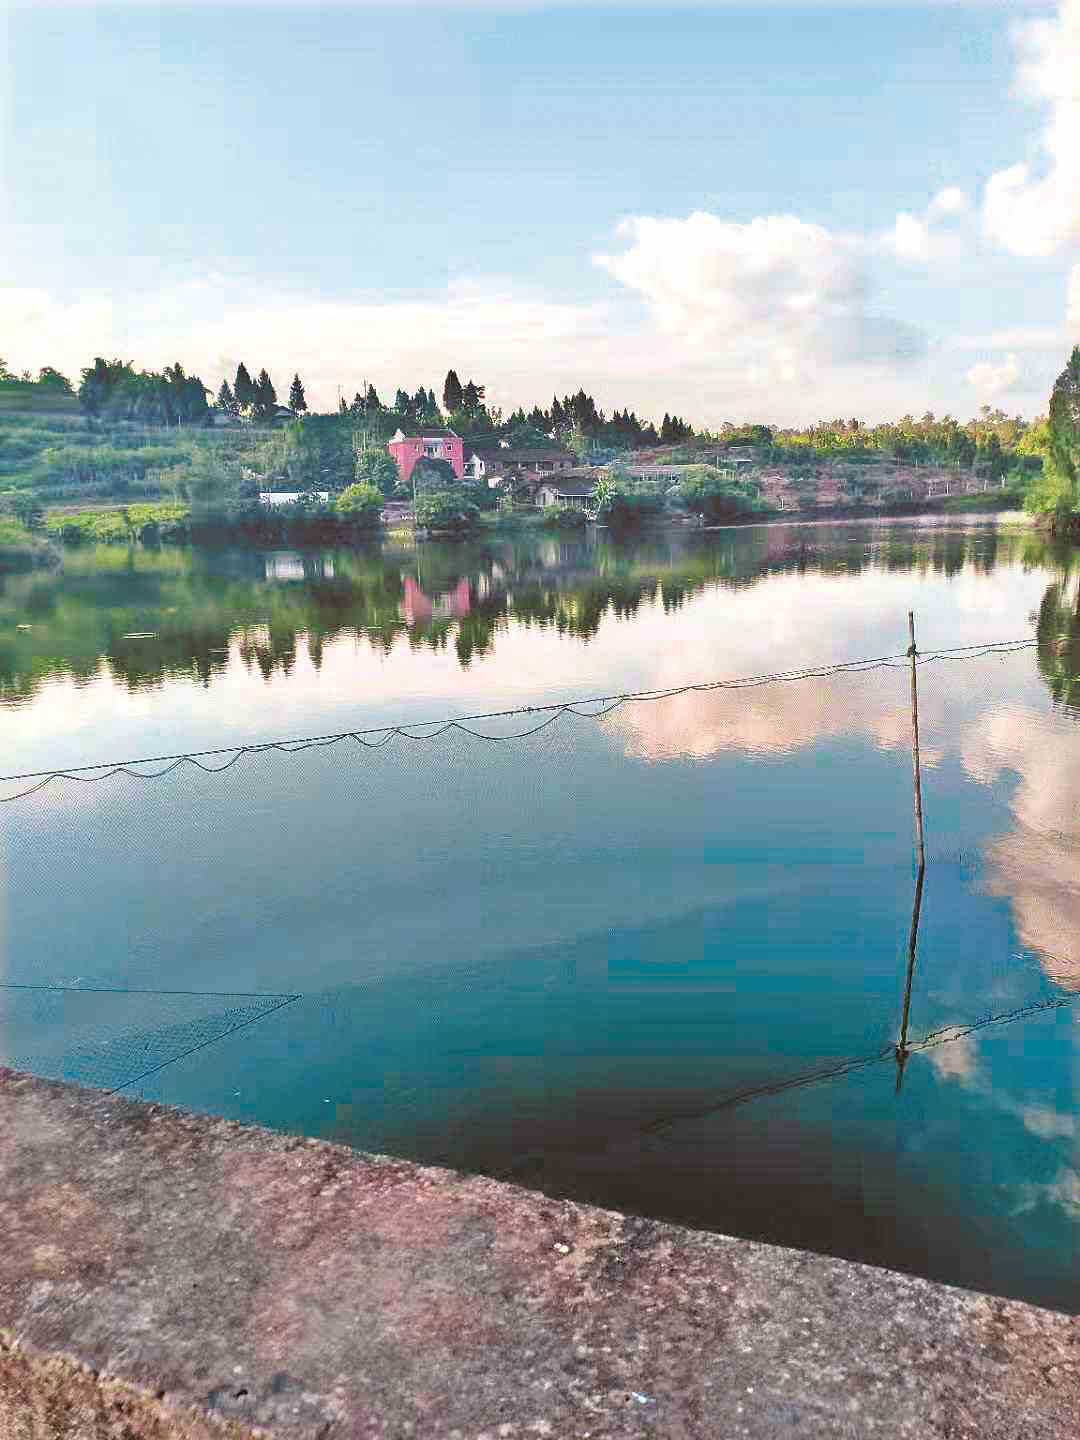 15个月了 水库鱼塘承包权仍未收回 水务局调查水质确有污染　岩峰信访办表示不影响生活灌溉